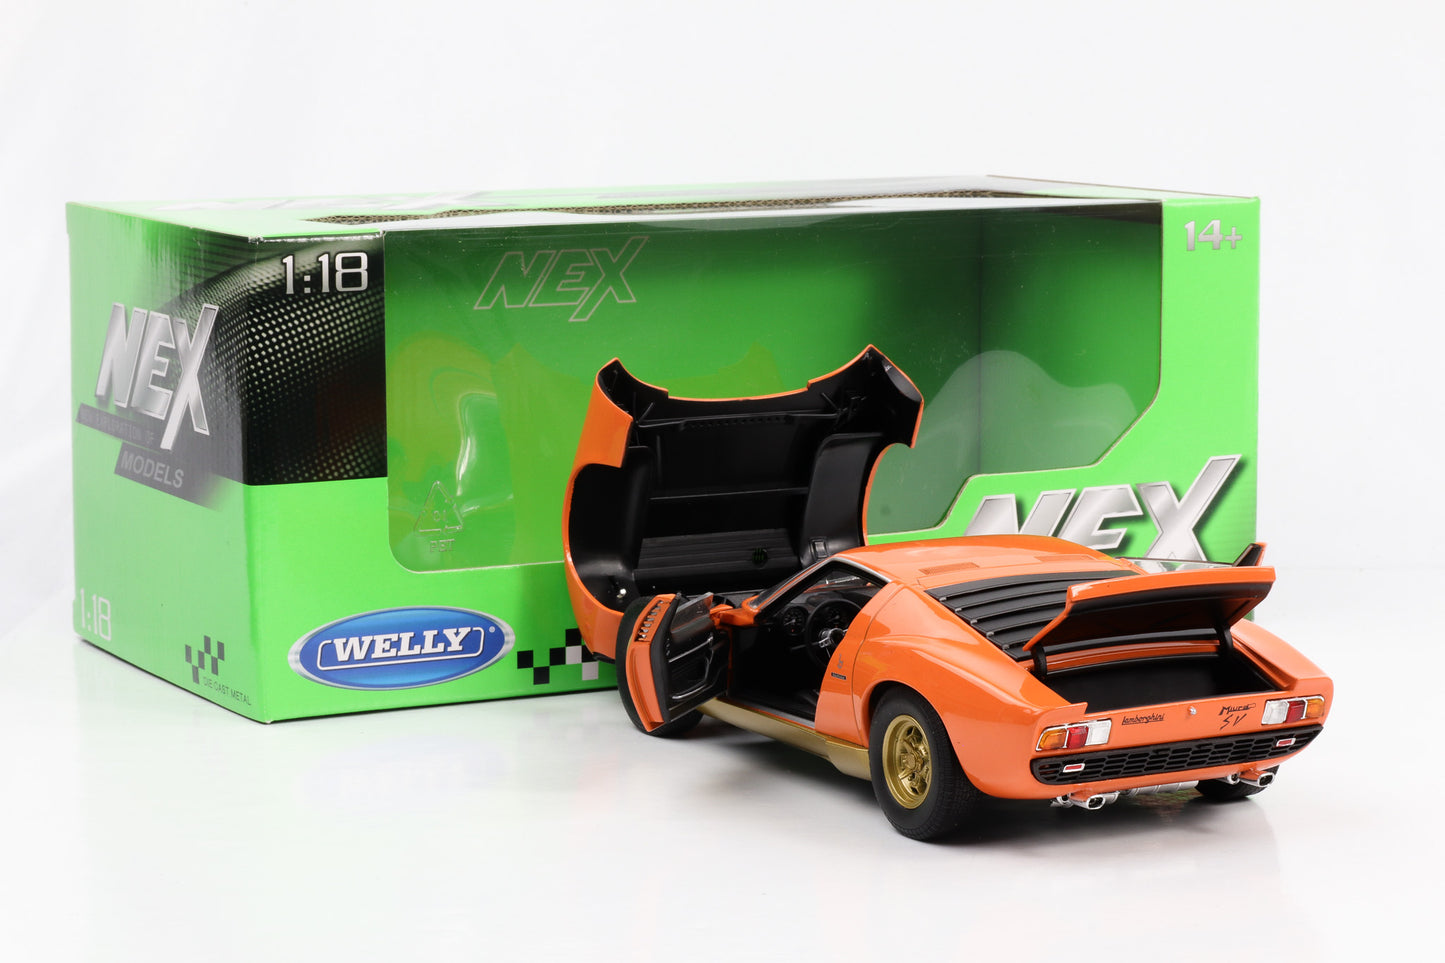 1:18 Lamborghini Miura SV 1971 orange Welly NEX diecast